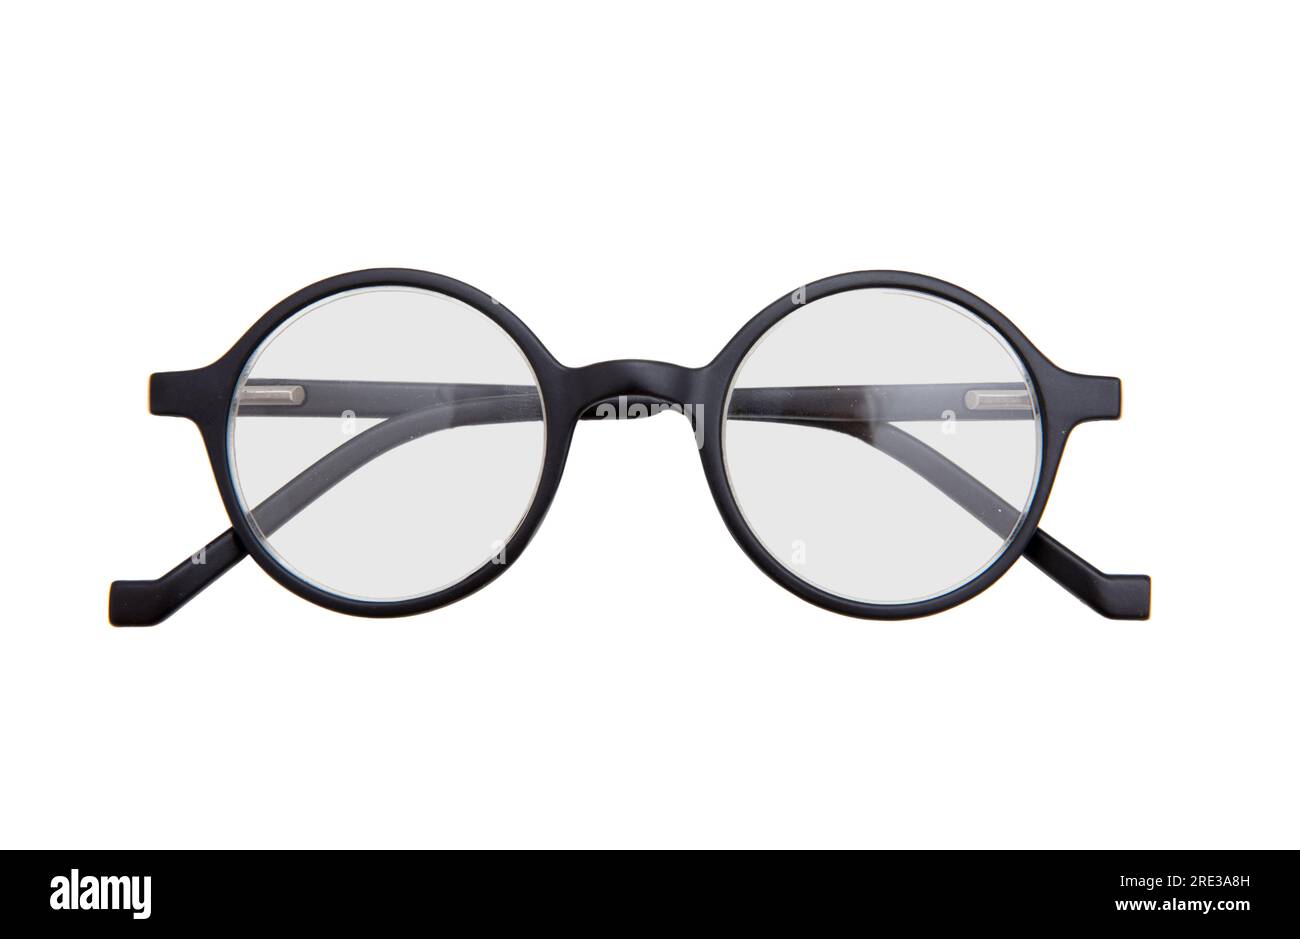 Schwarze Brille mit rundem Rahmen, Myopie, Presbyopie Augenbrille isolierter Ausschnitt auf weißem Hintergrund, Stockfoto